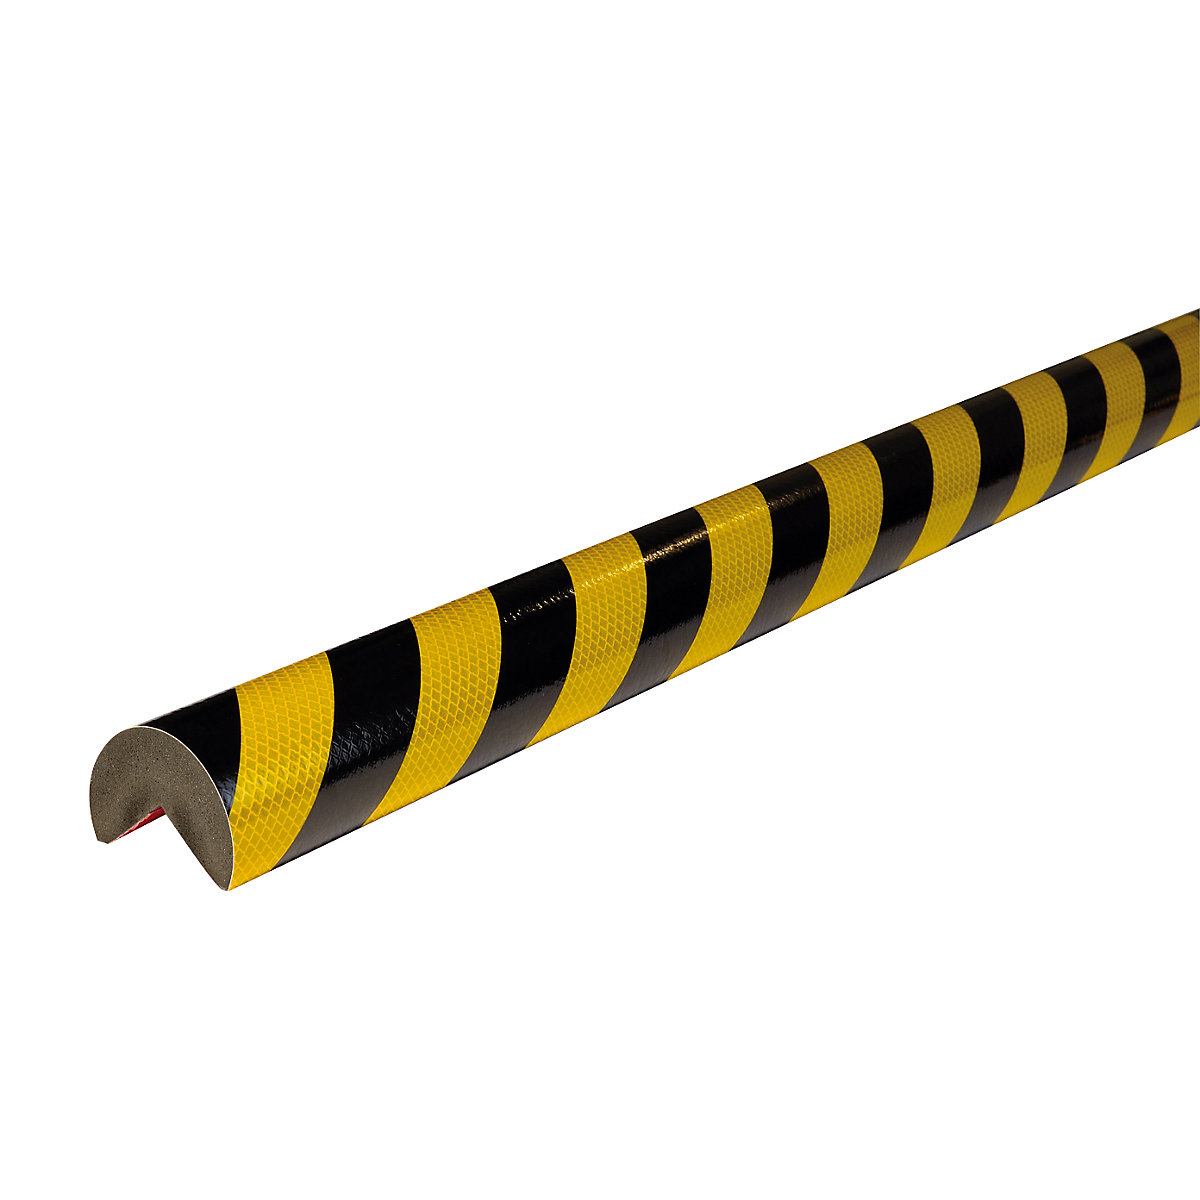 Knuffi®-hoekbescherming – SHG, type A+, stuk van 1 m, zwart/geel, reflecterend-9